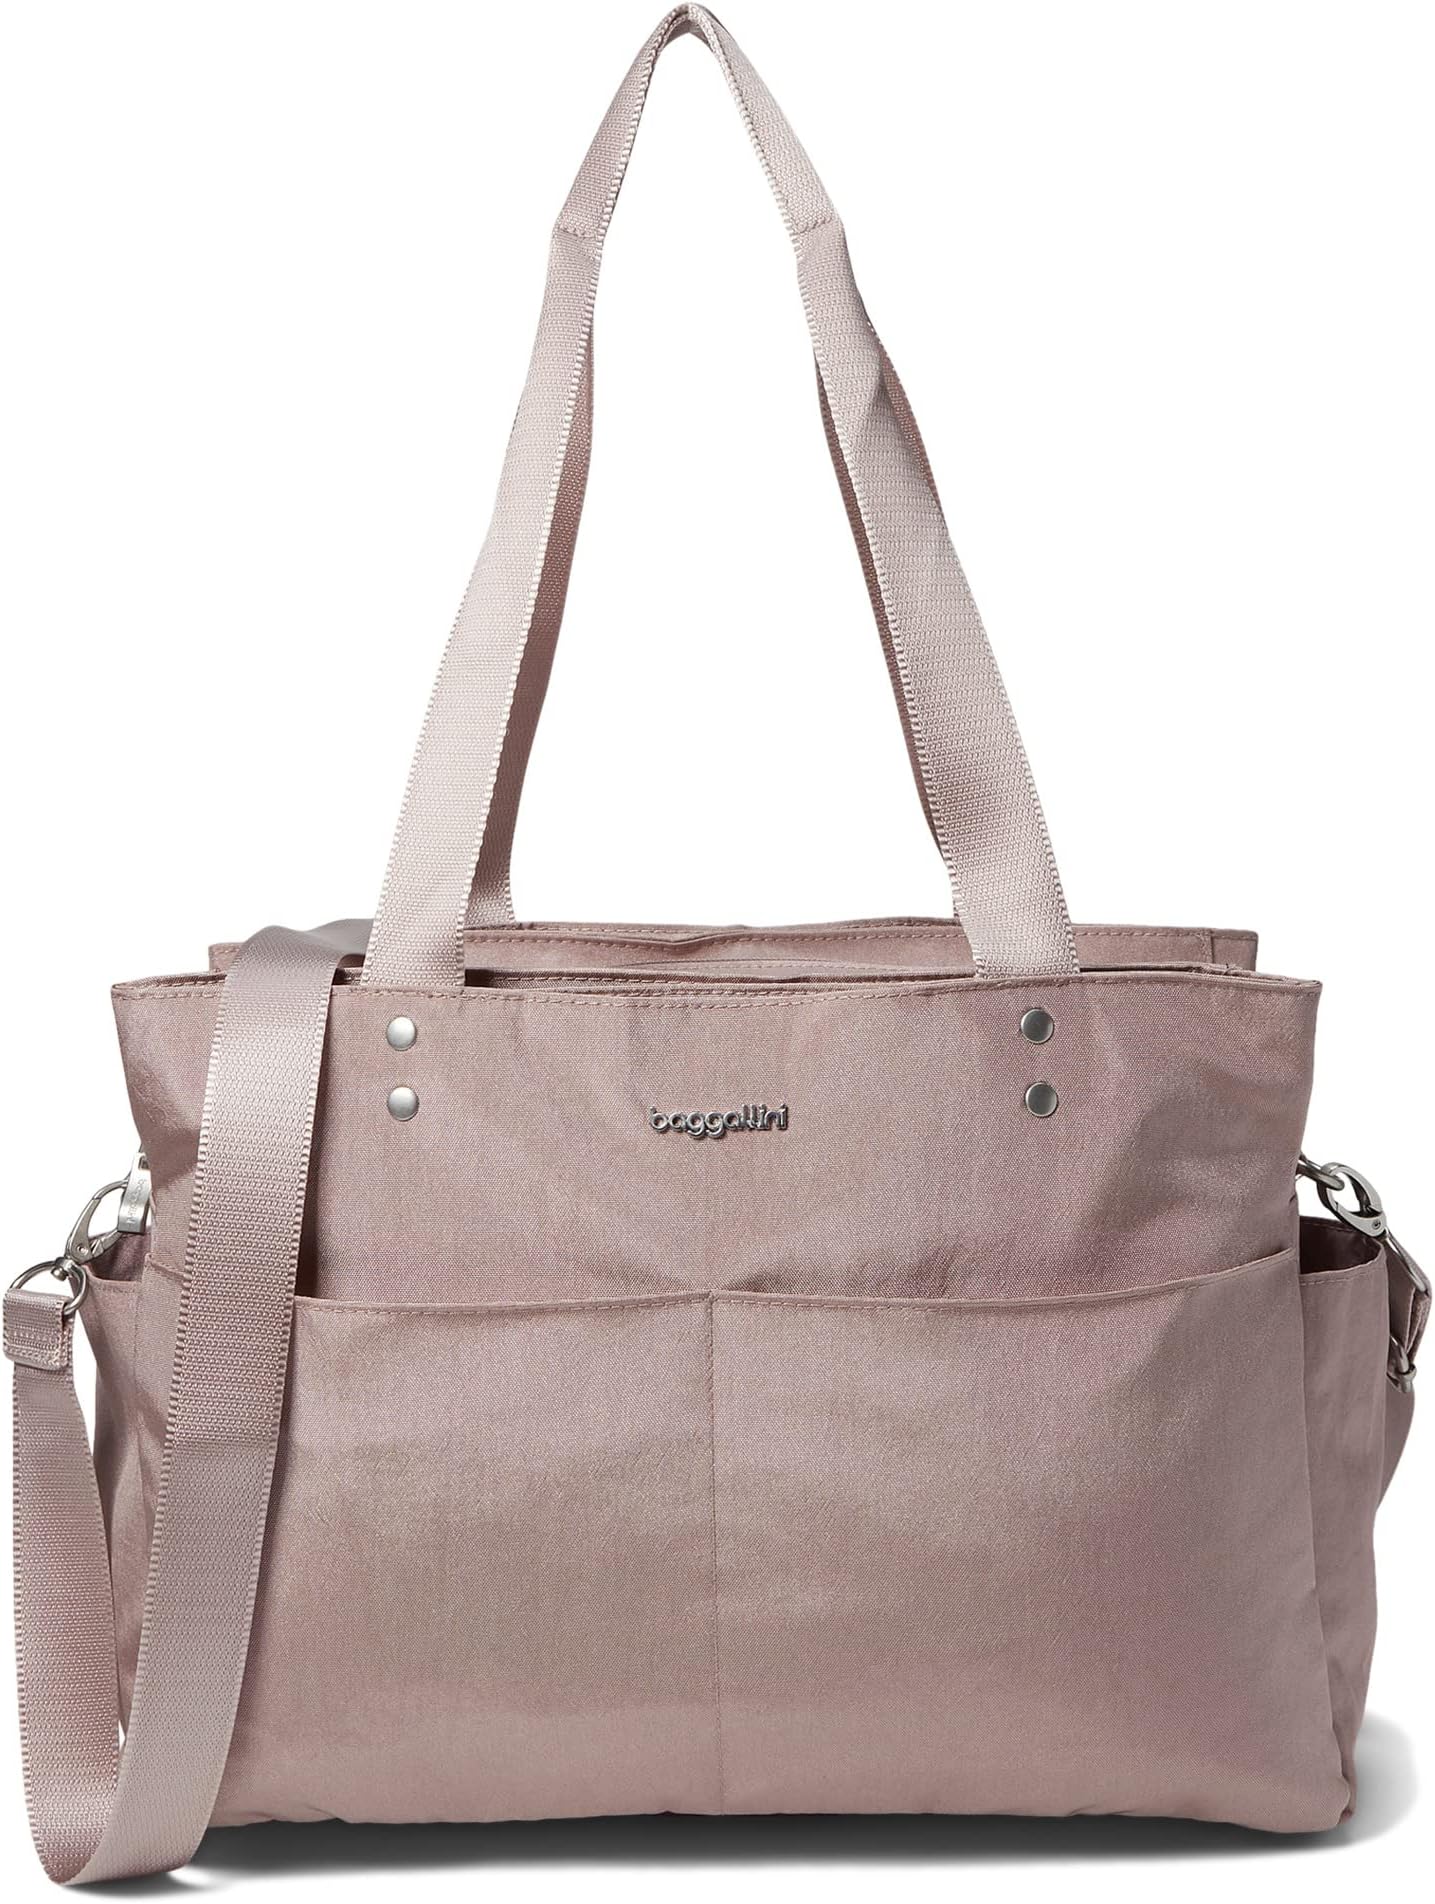 цена Единственная сумка Baggallini, цвет Blush Shimmer